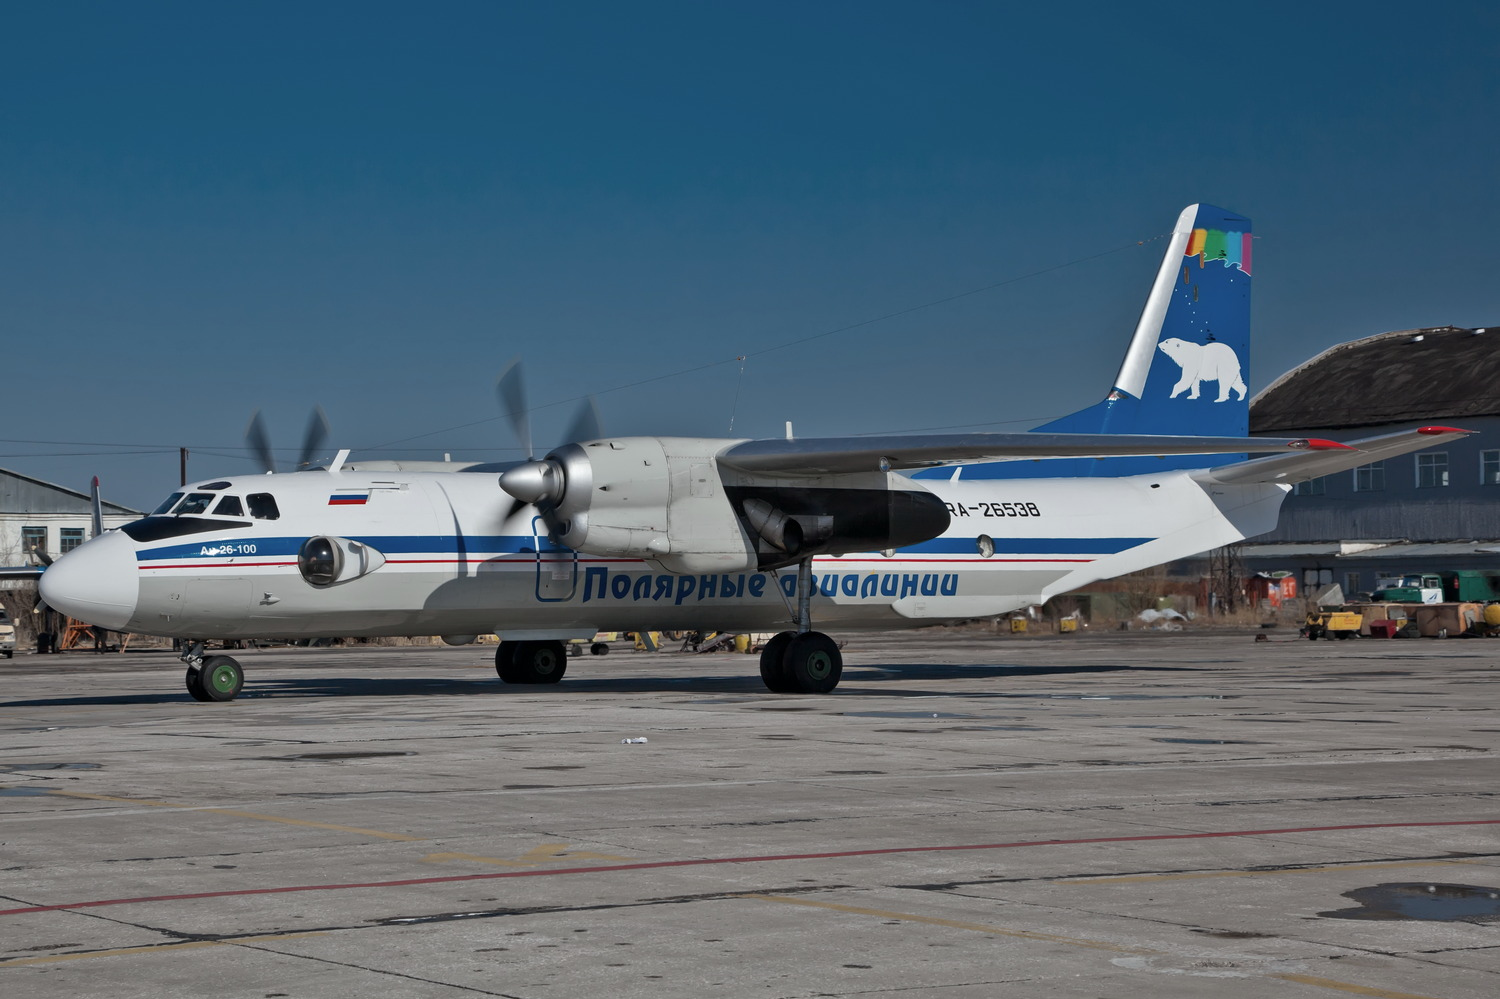 Авиакомпания полярные авиалинии (polar airlines)